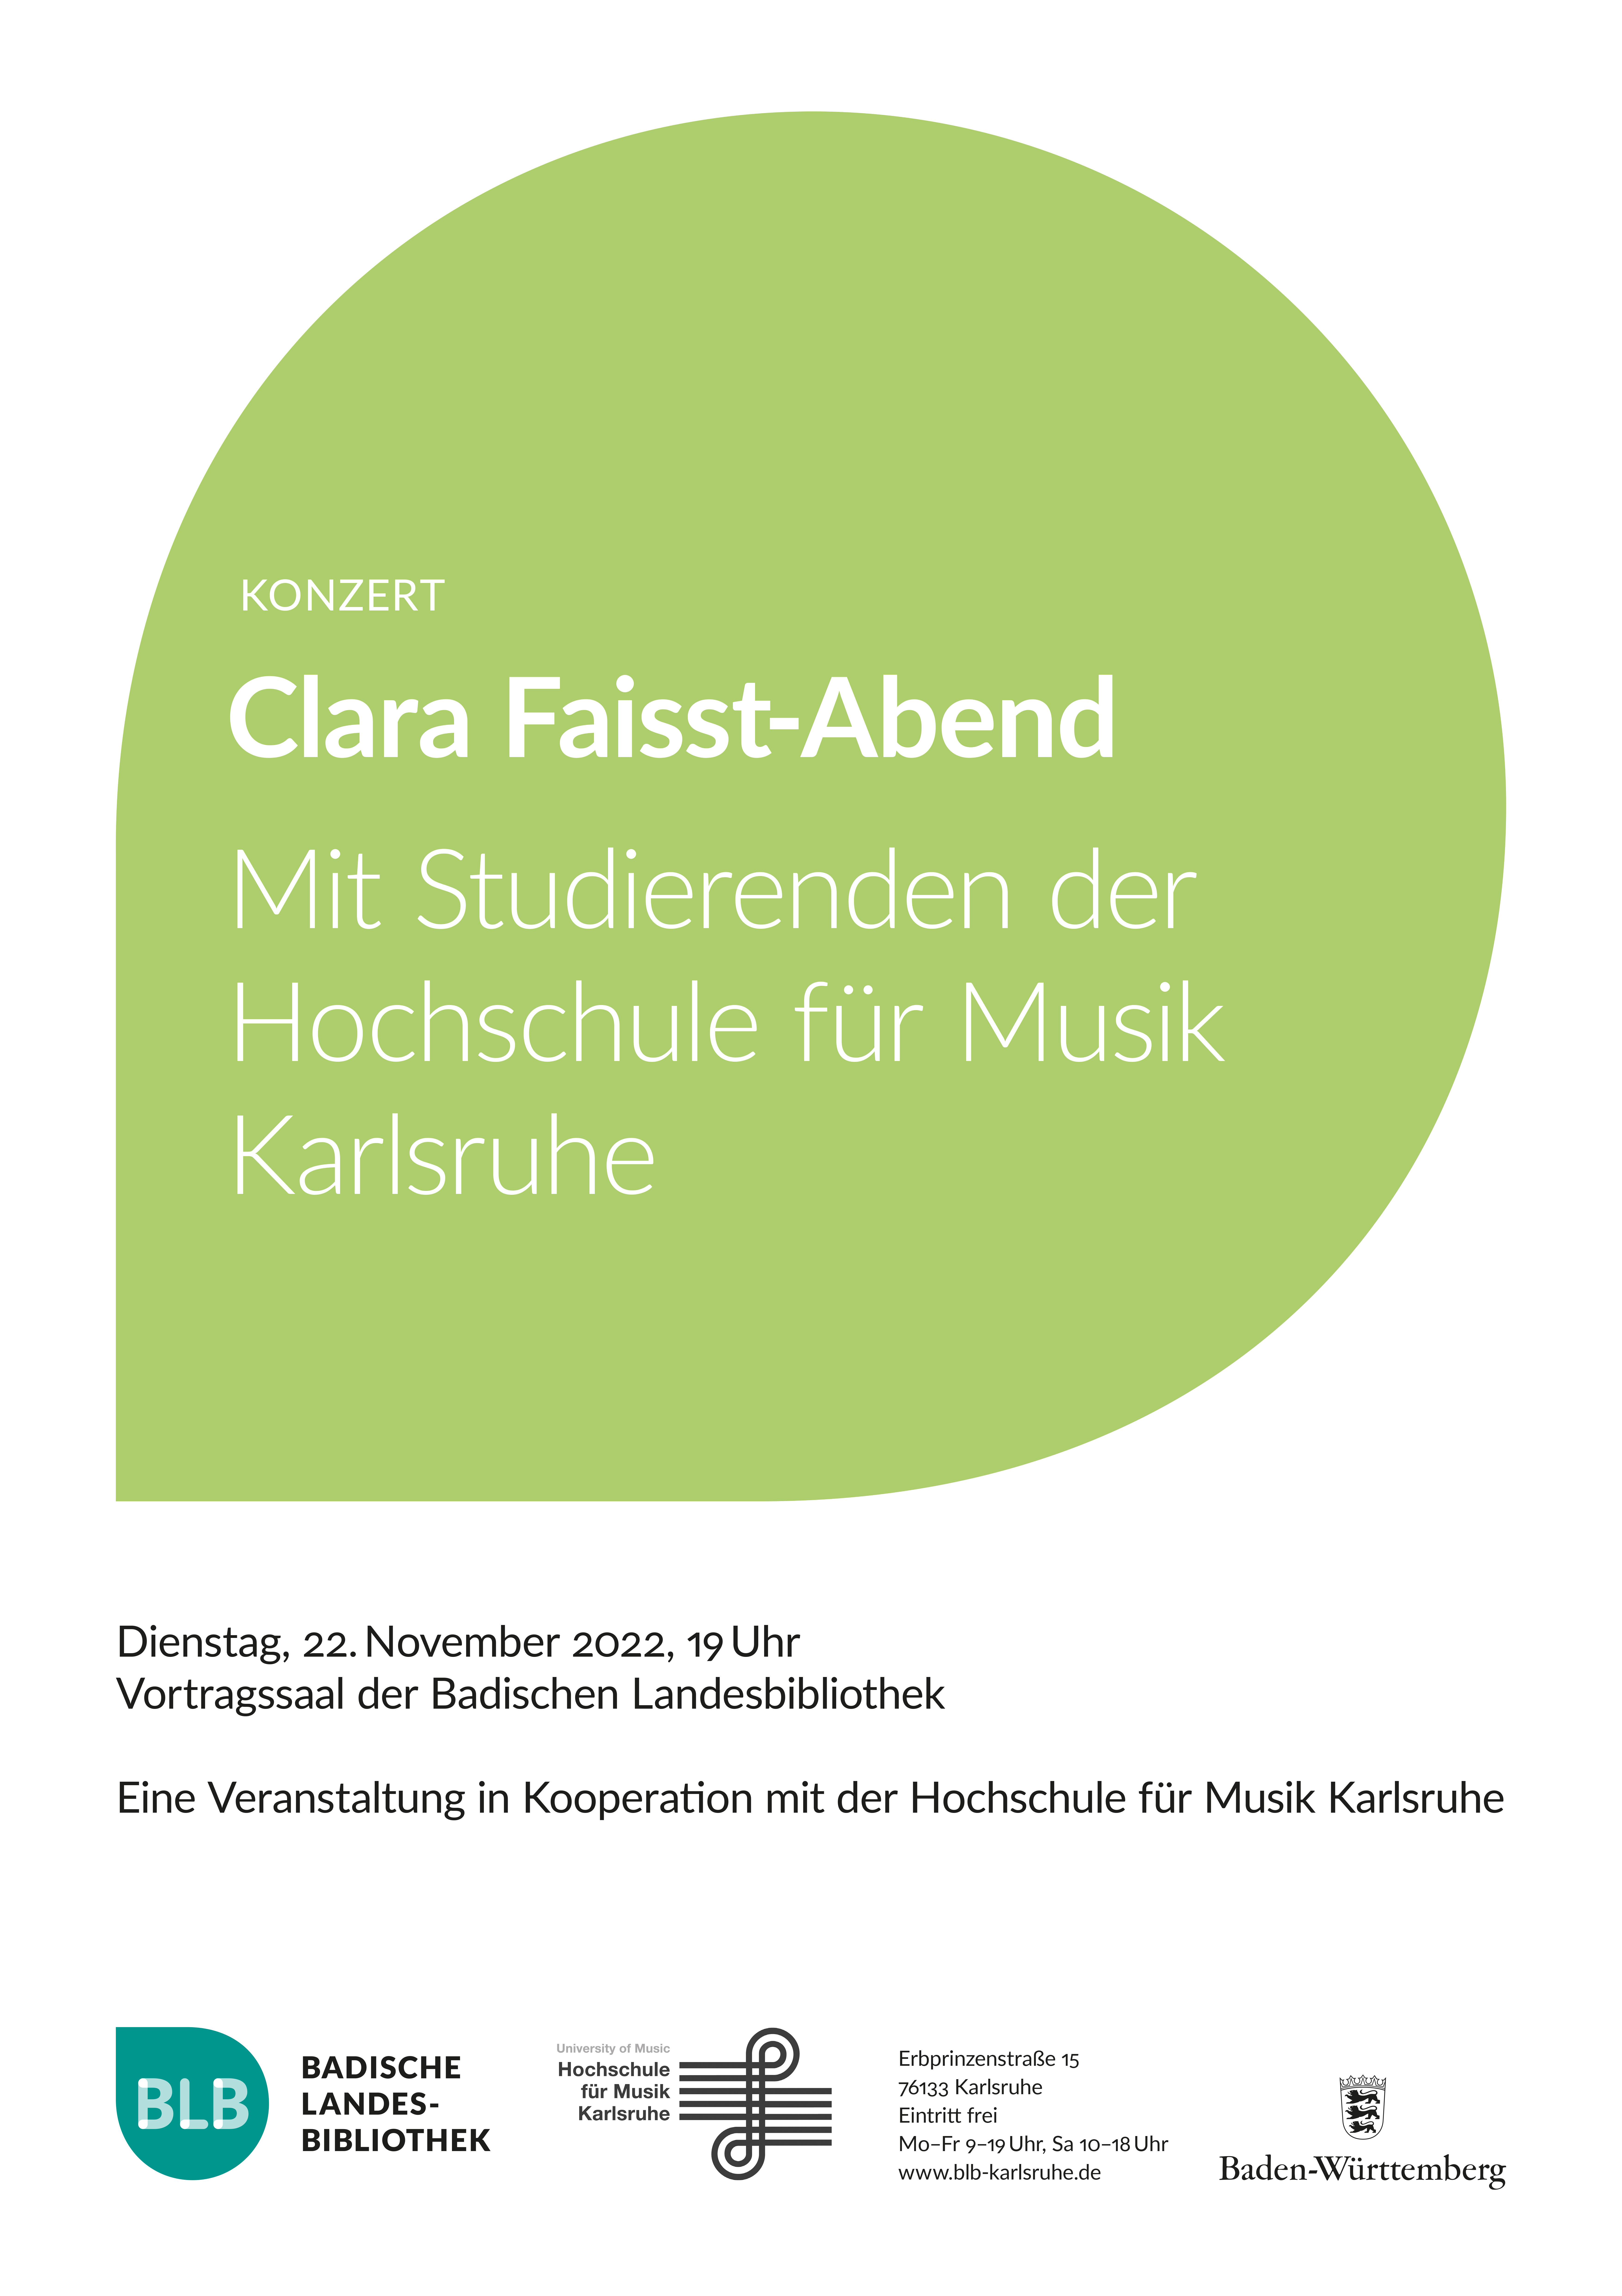 Zu sehen ist das Ankündigungsplakat zum Konzert zu Ehren der Komponistin Clara Faisst.